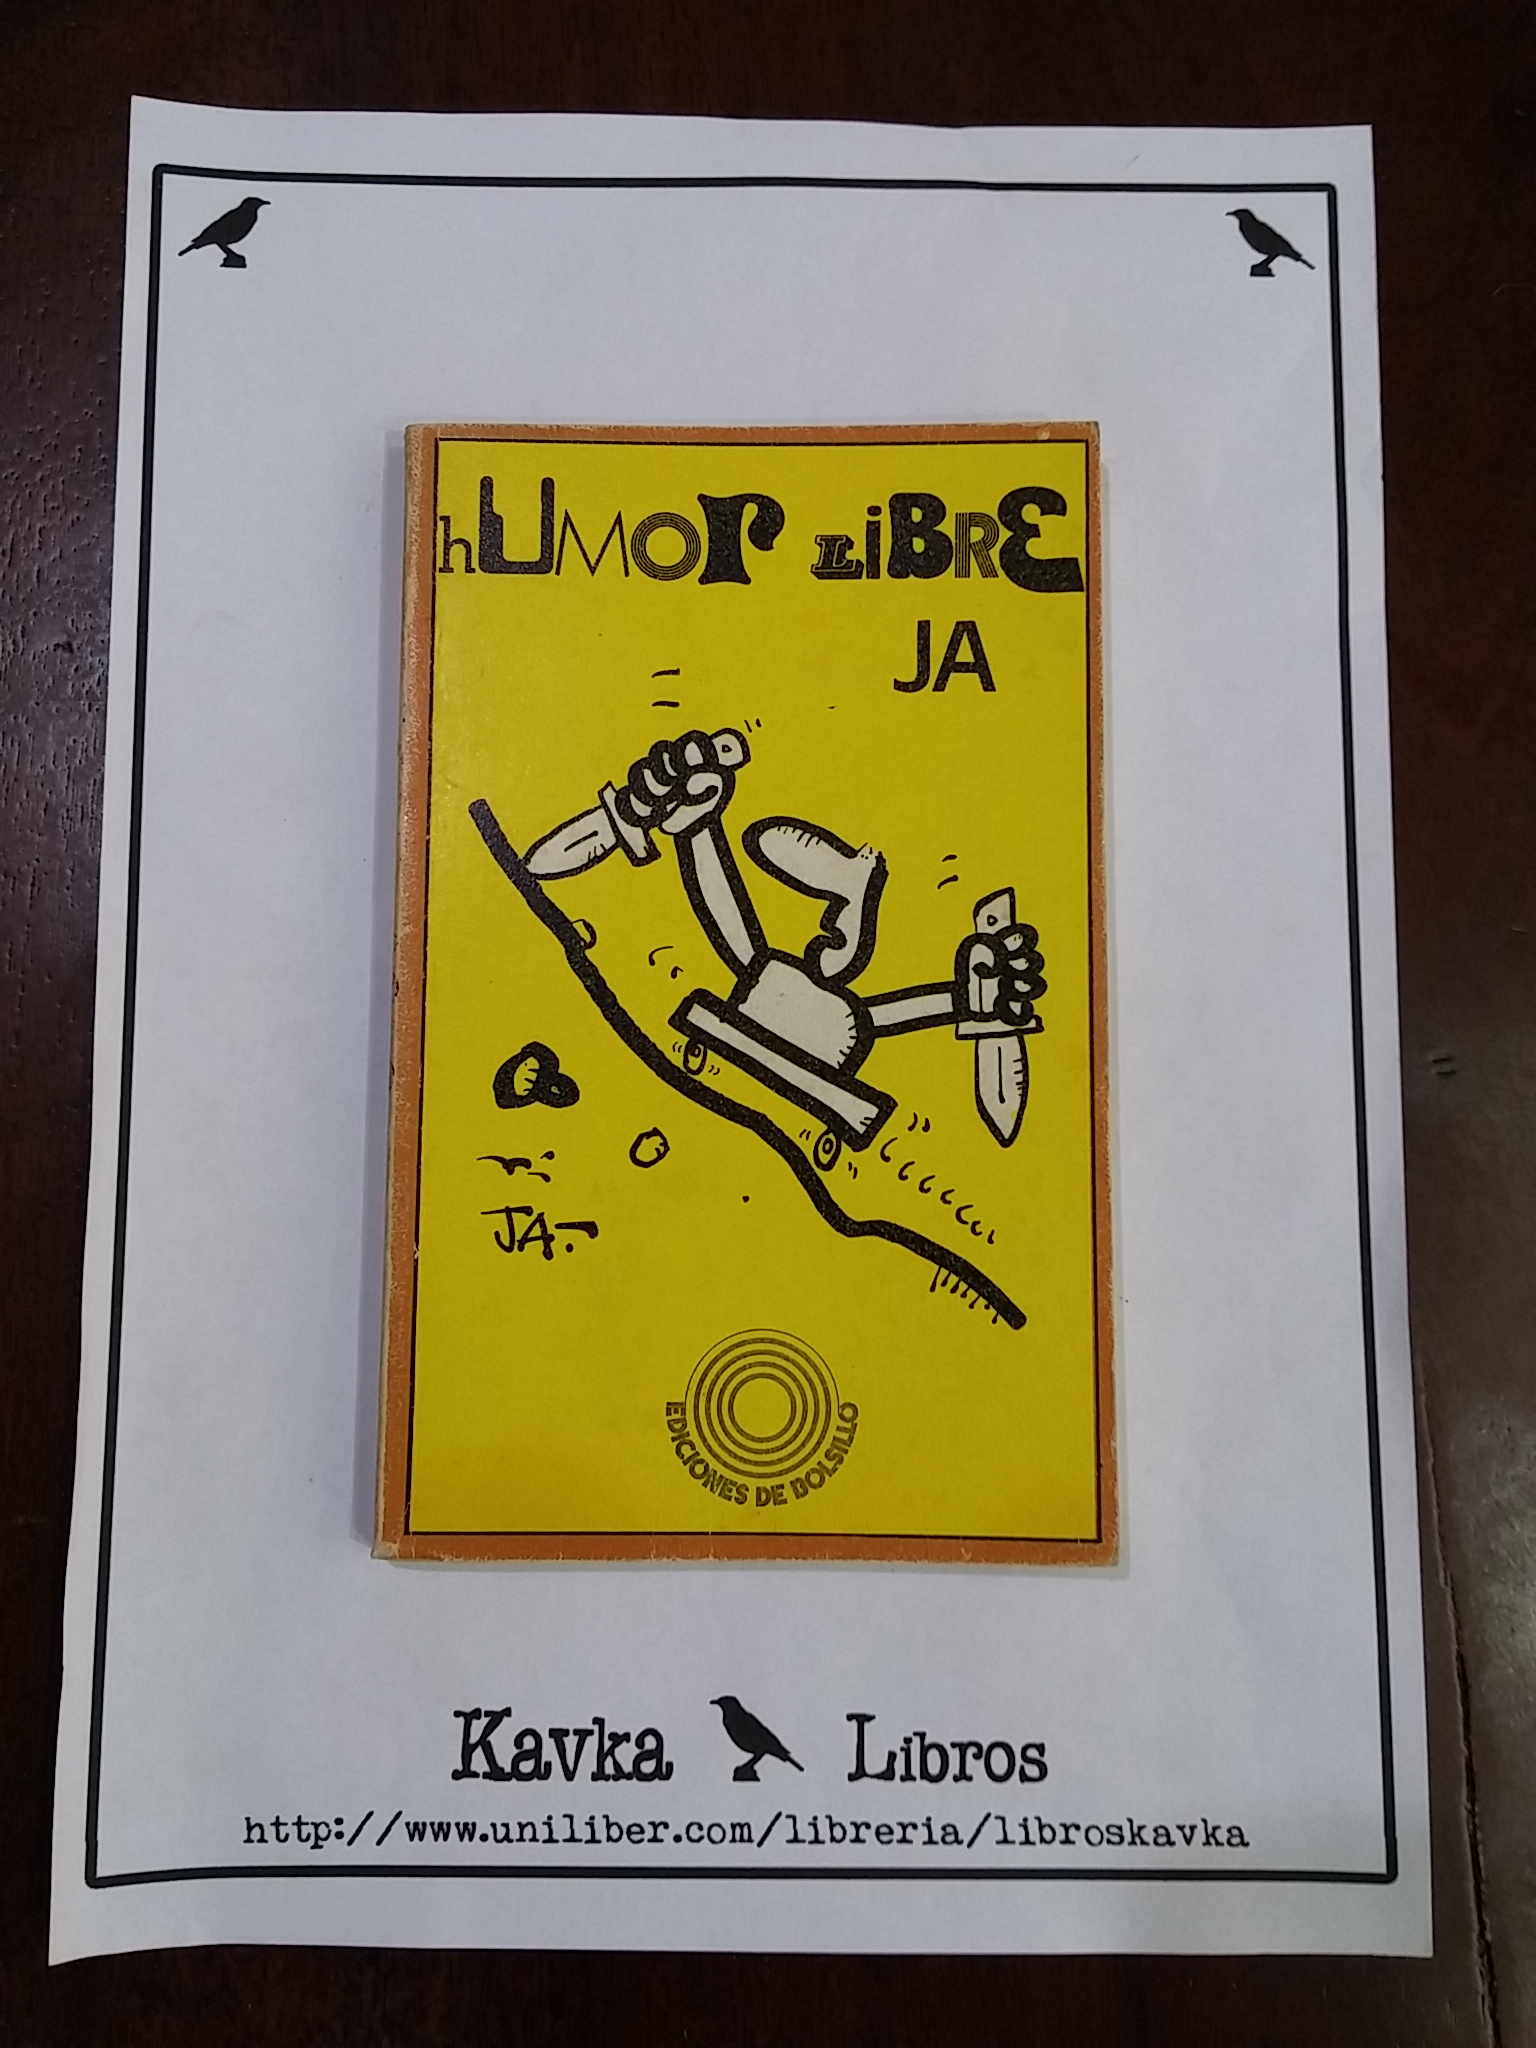 humor - Ejemplares antiguos, descatalogados y libros de segunda mano desde 1,00€ hasta 5,00€ imagen